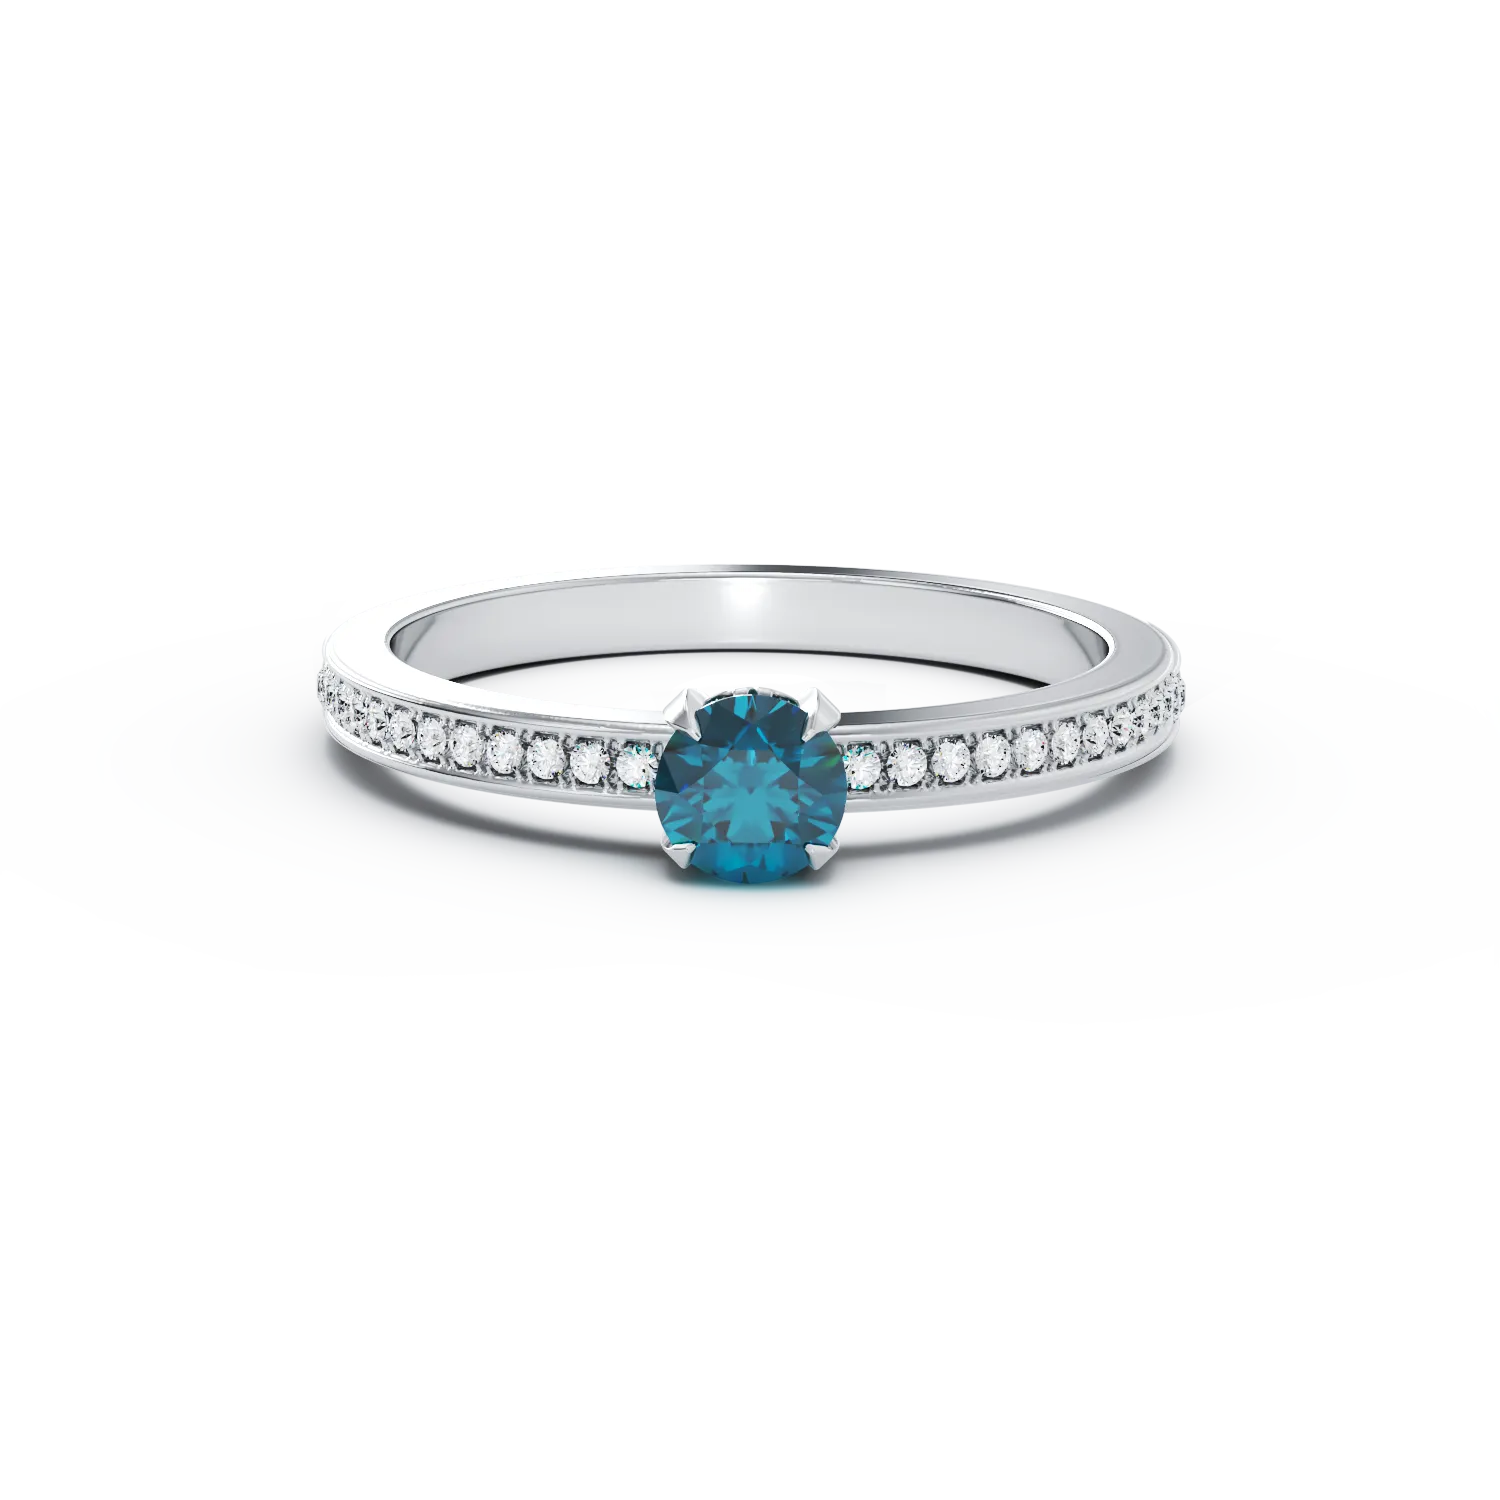 Inel de logodna din aur alb de 18K cu diamant albastru de 0.32ct si diamante transparente de 0.19ct